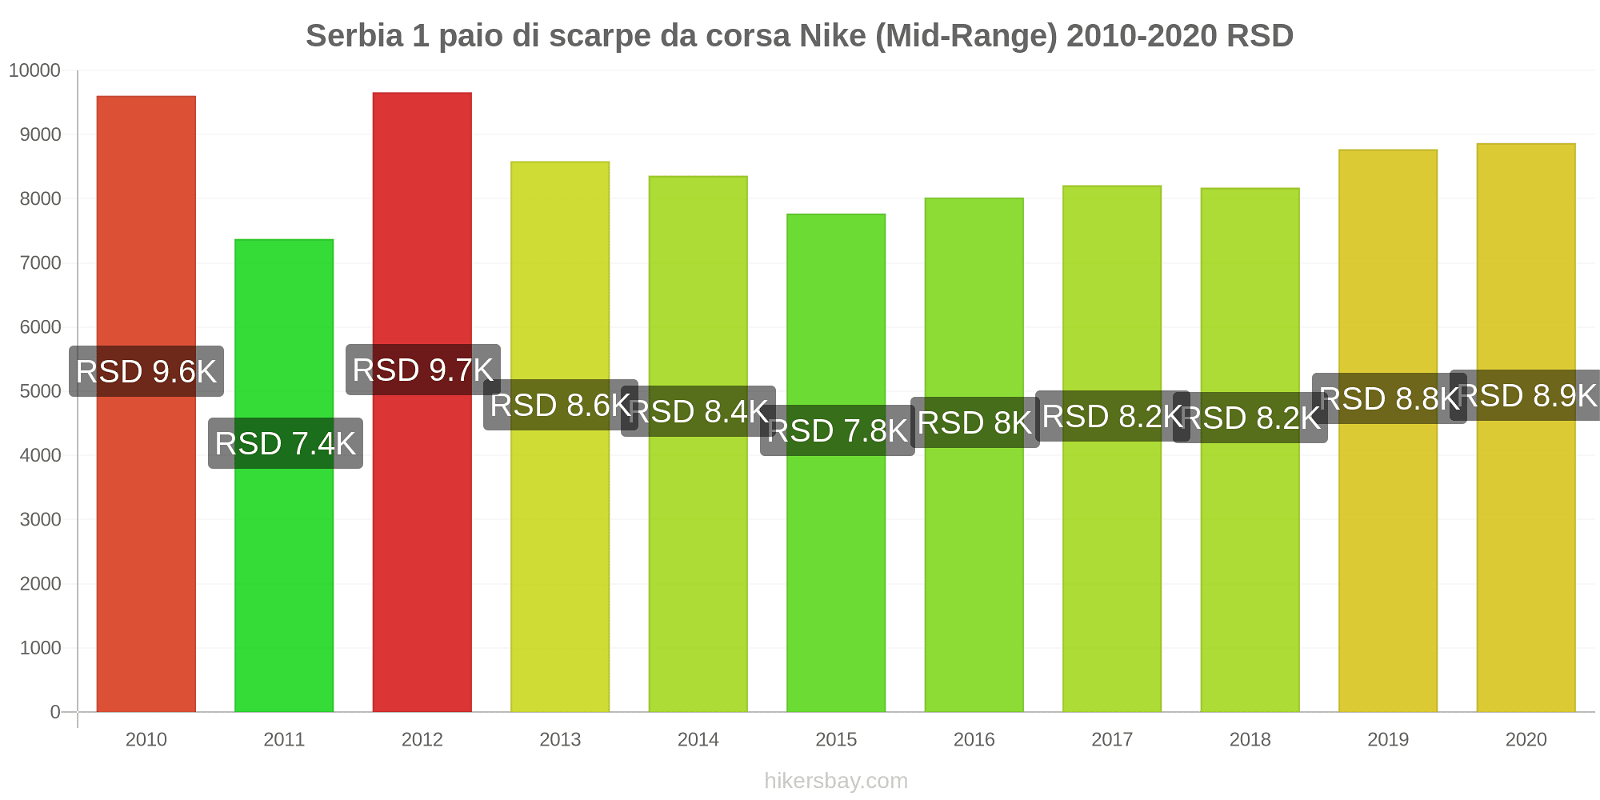 Serbia variazioni di prezzo 1 paio di scarpe da corsa Nike (simile) hikersbay.com